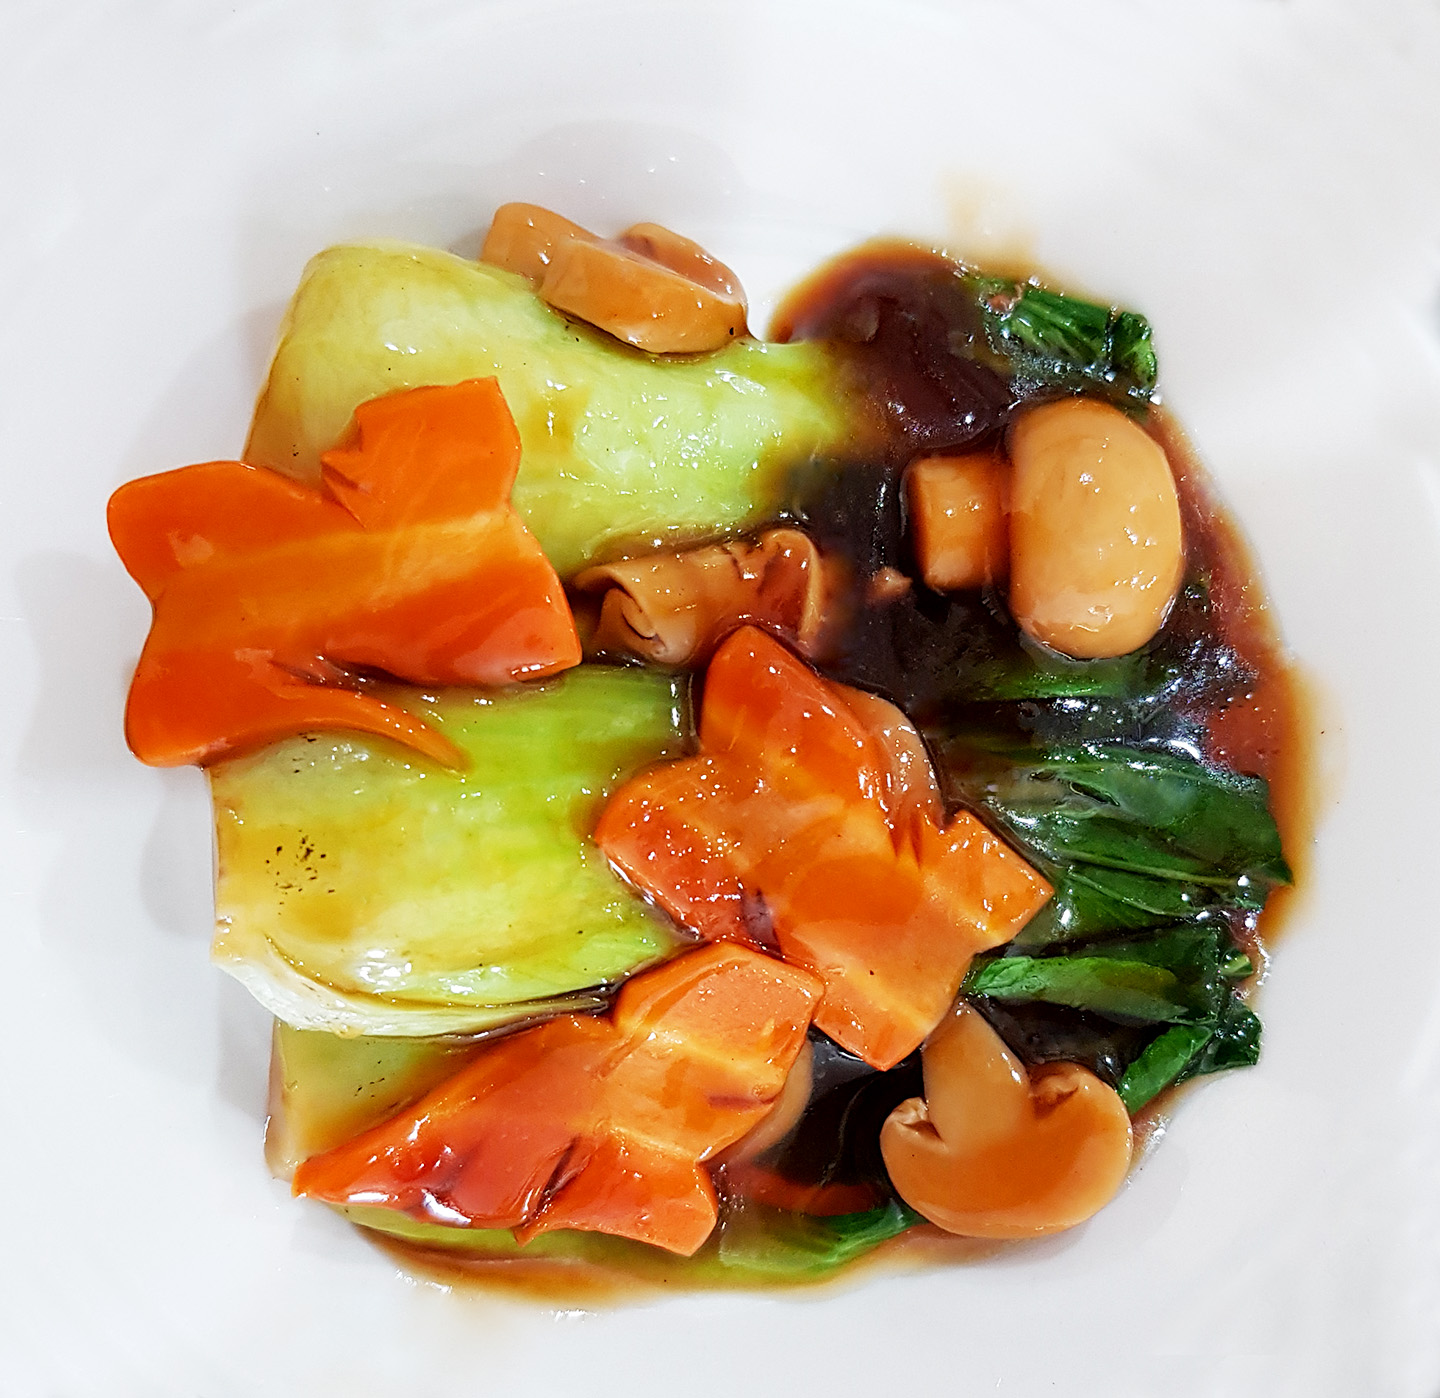 Pakcoy saus tiram disajikan dengan sayuran hijau, wortel dan jamur menghasilkan rasa lezat dan aroma khas